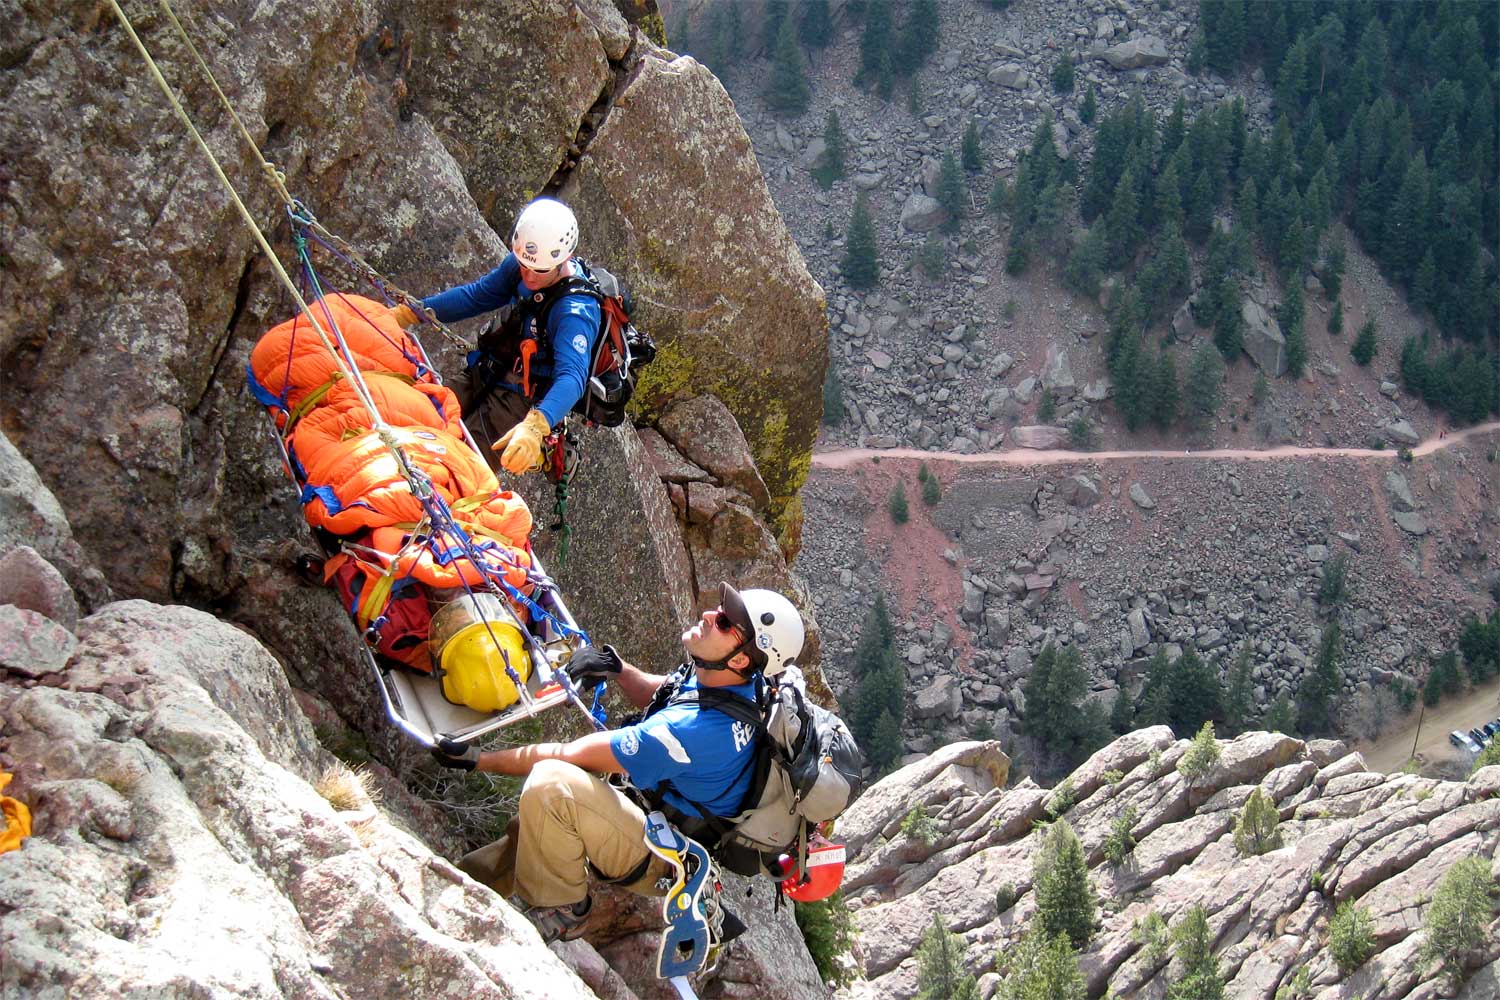 colorado, Rocky Mountain national park, rmnp, rescue